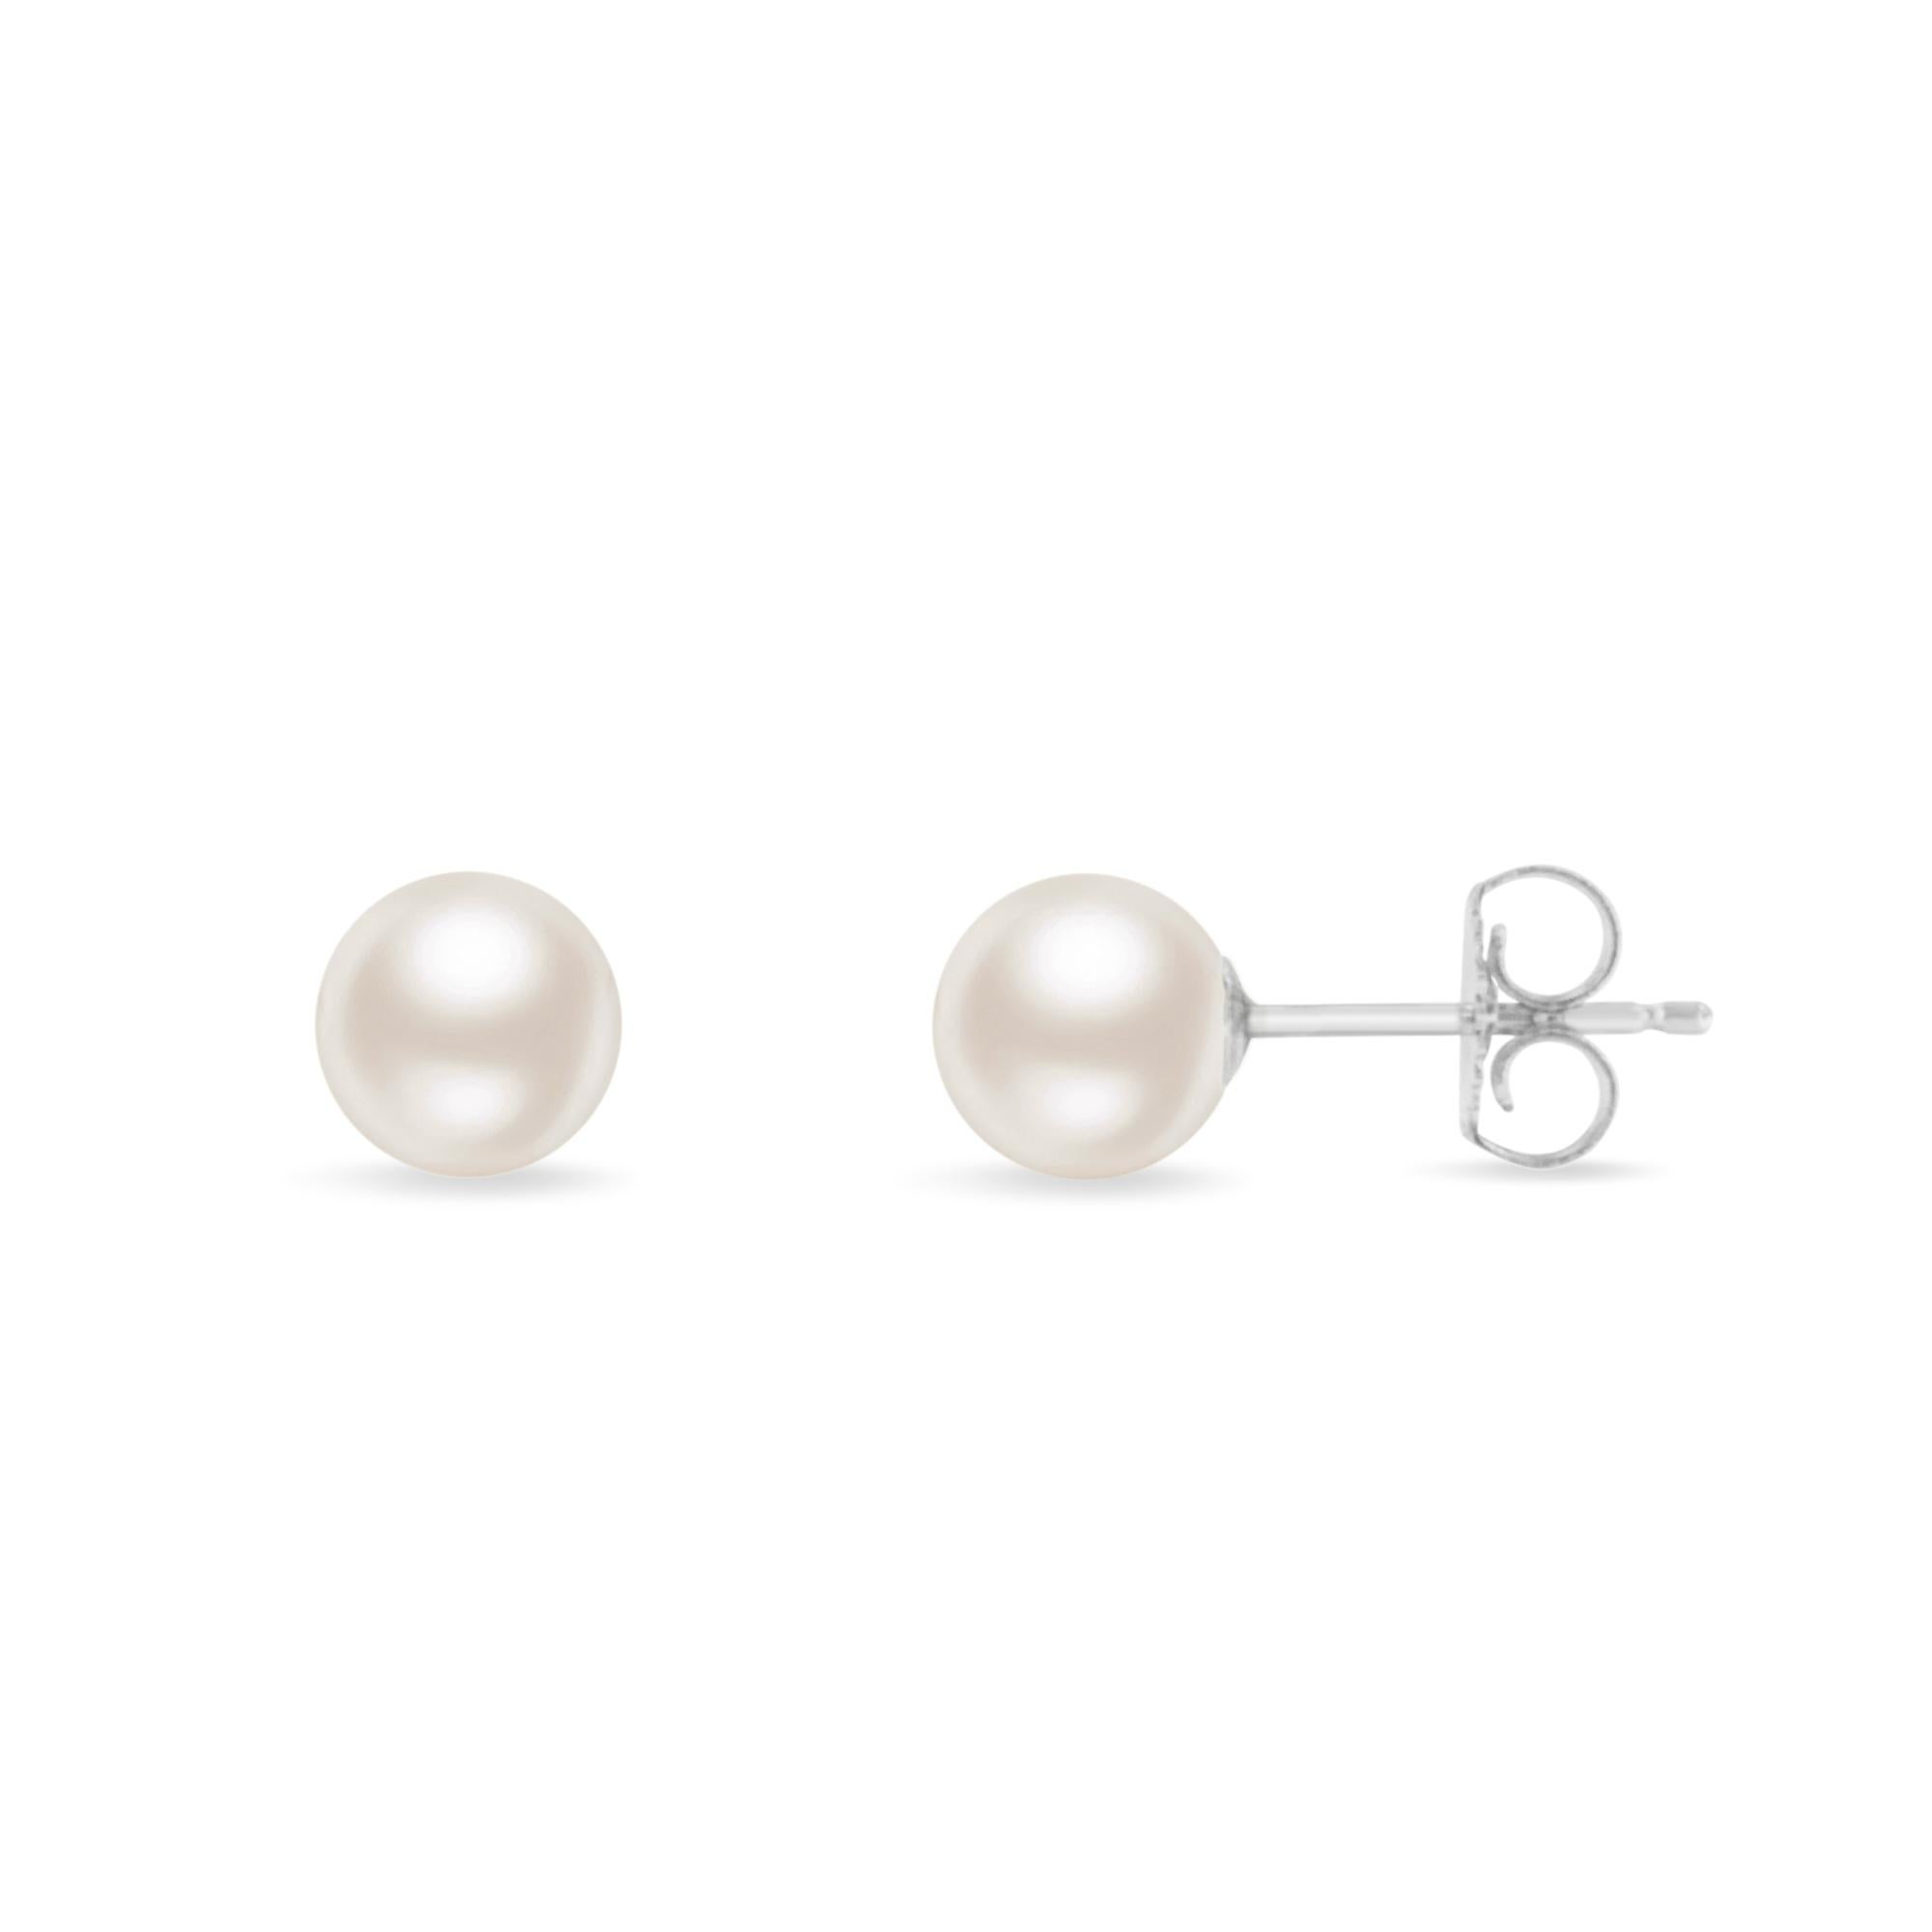 Perlen sind ein zeitloser Klassiker, und diese schlichten Perlenohrstecker sind der Gipfel der Qualität. Diese hochglänzenden Akoya-Zuchtperlen sind weiß mit rosa Untertönen und perfekt rund. Jede Perle ist in einer Schalenfassung aus echtem